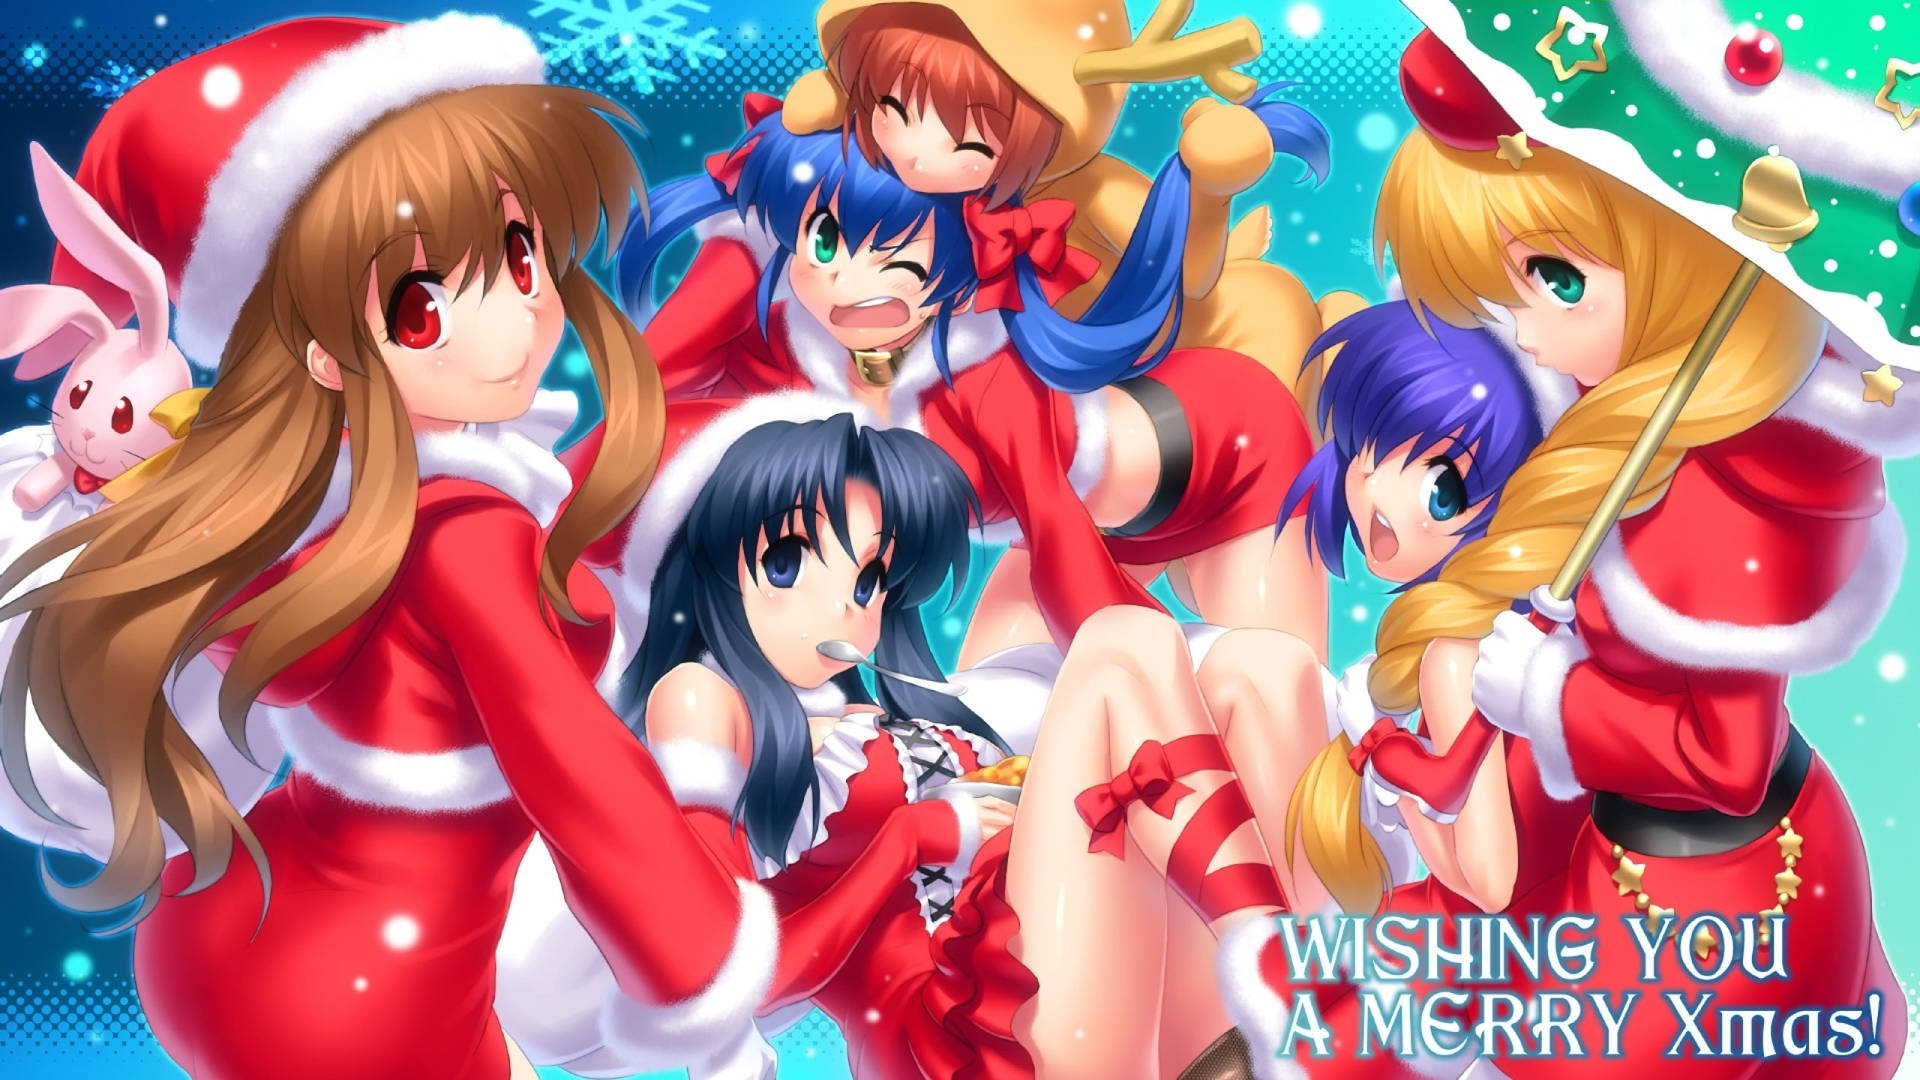 Girl Group Anime Christmas Wallpaper